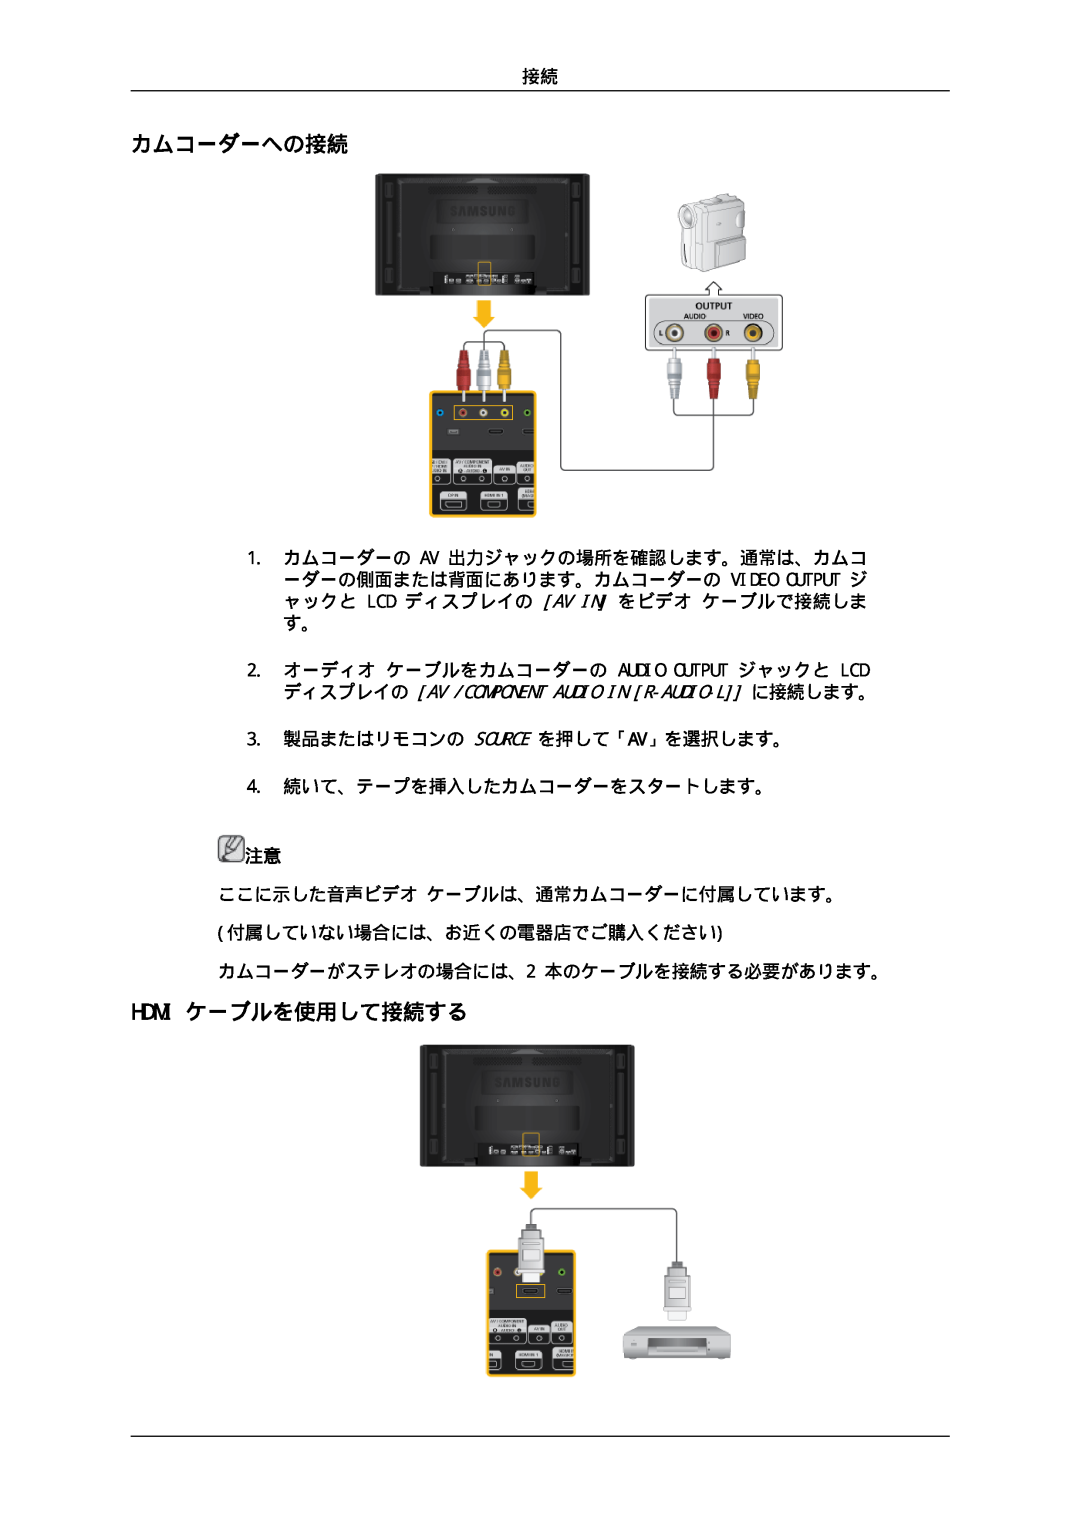 Samsung LH46CKSLBB/XJ, LH46CBULBB/XJ manual カムコーダーへの接続, Hdmi ケーブルを使用して接続する, ディスプレイの Av /Component Audio In R-Audio-L に接続します。 